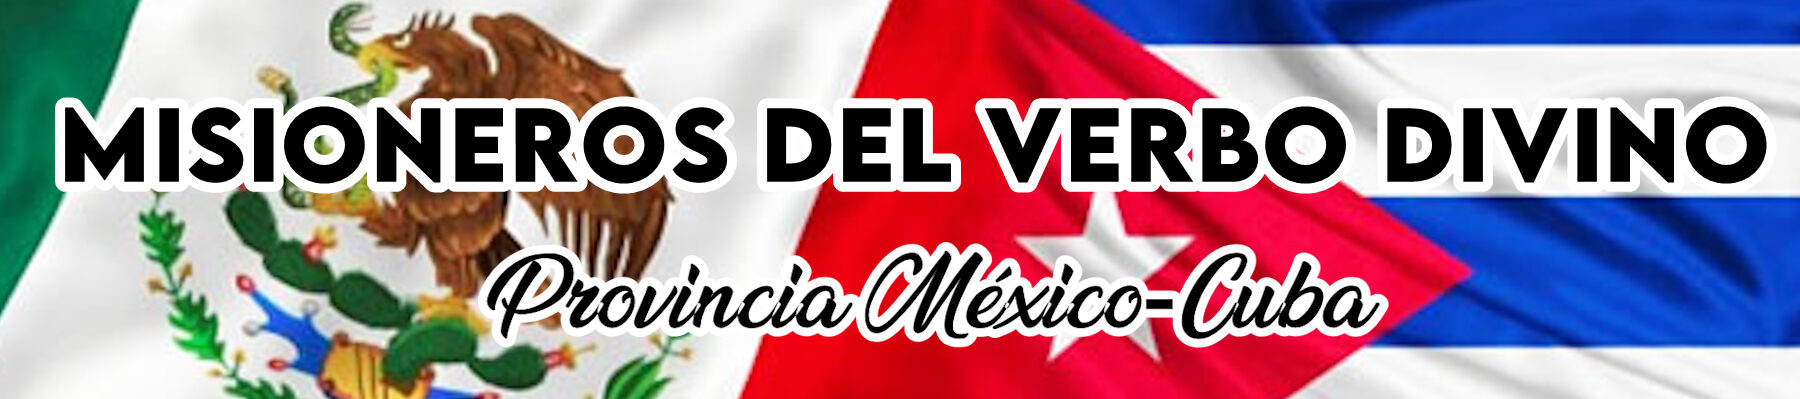 Misioneros del Verbo Divino; Provincia México-Cuba